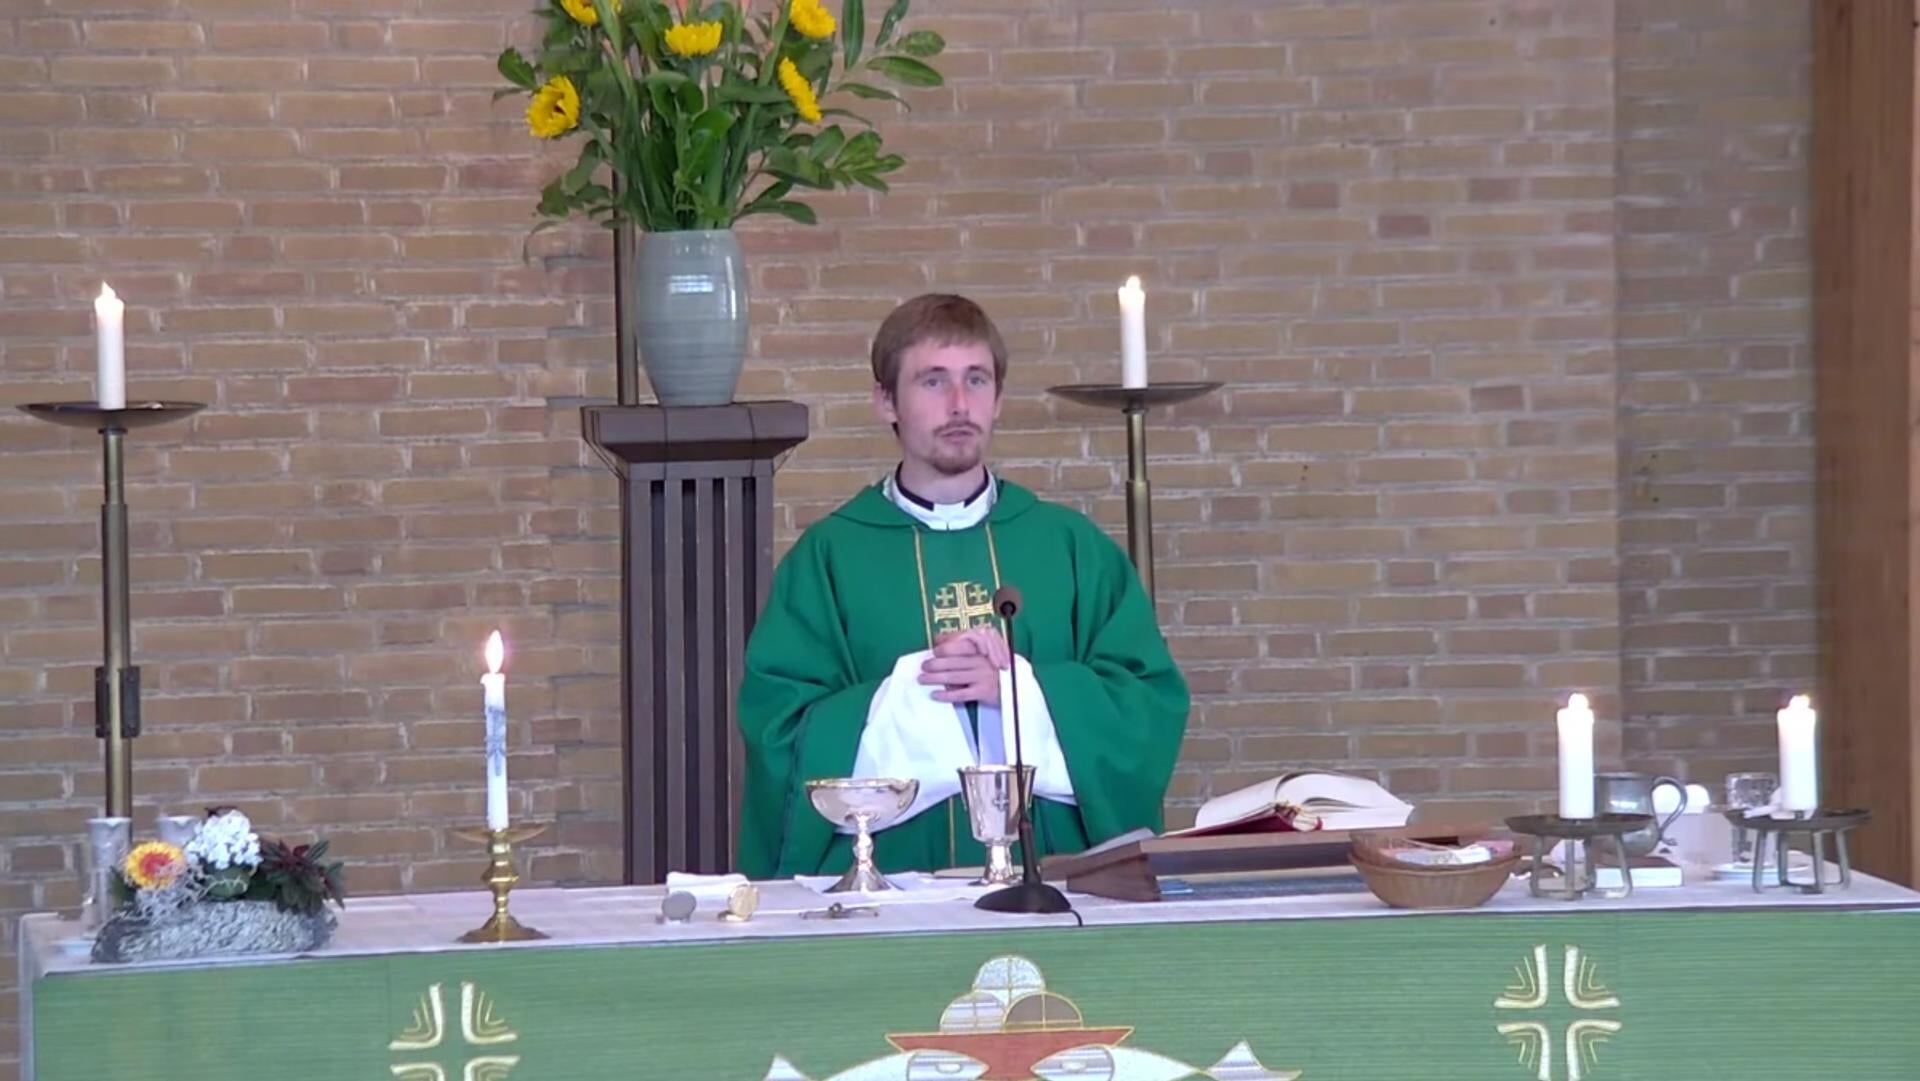 De 33-jarige priester Eli Stok uit Delft verlaat het priesterambt, volgens bisschop Hans van den Hende vanwege 'de verwachtingen die aan het priesterambt verbonden zijn'.